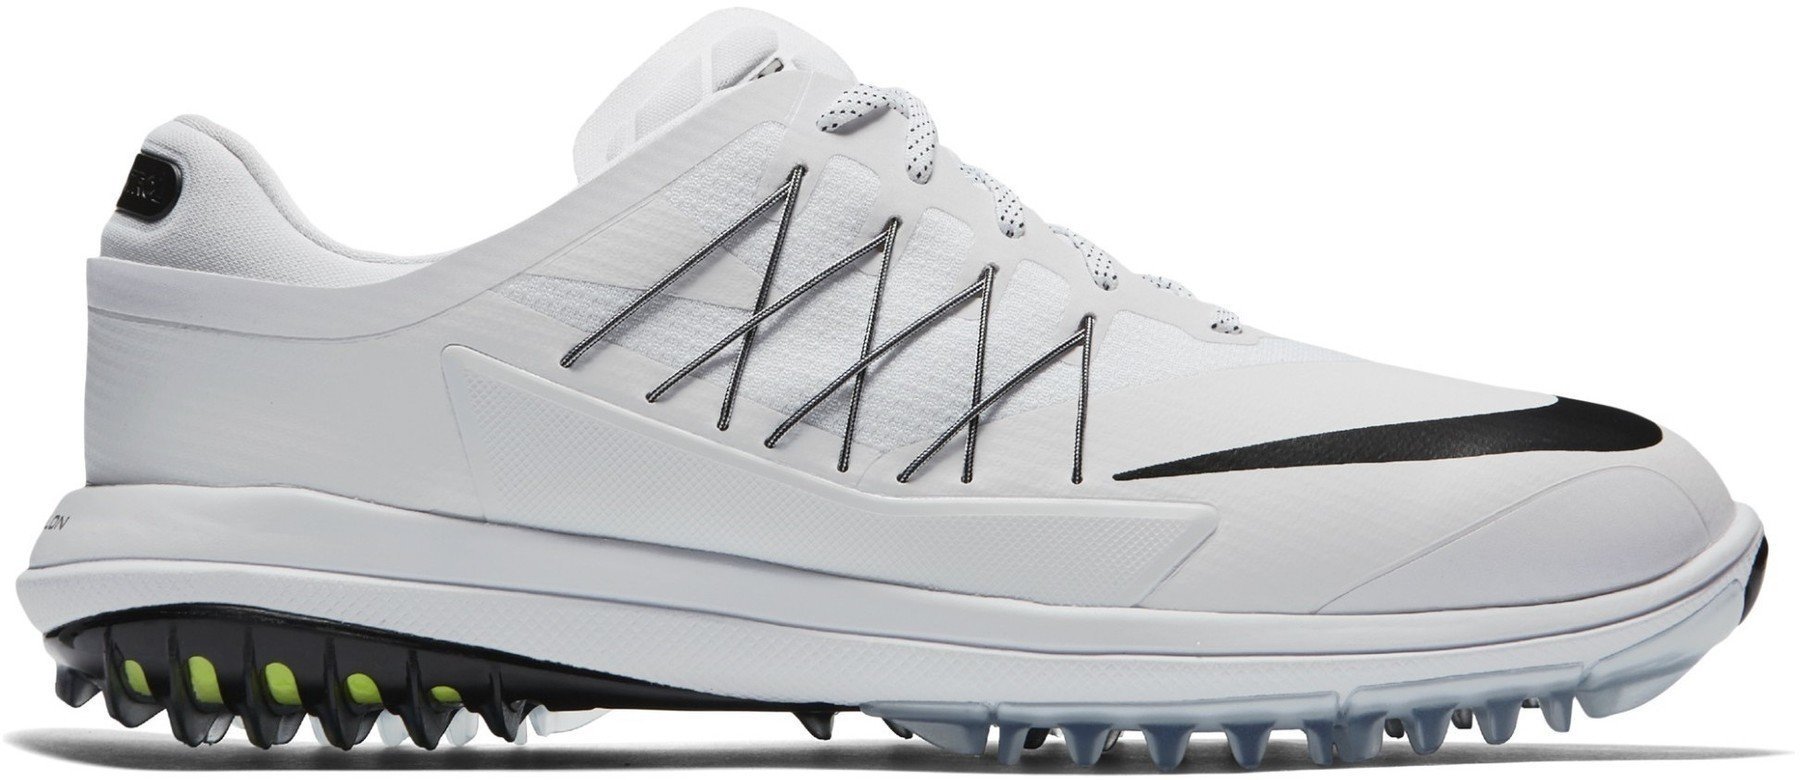 Calçado de golfe para homem Nike Lunar Control Vapor Mens Golf Shoes White US 9